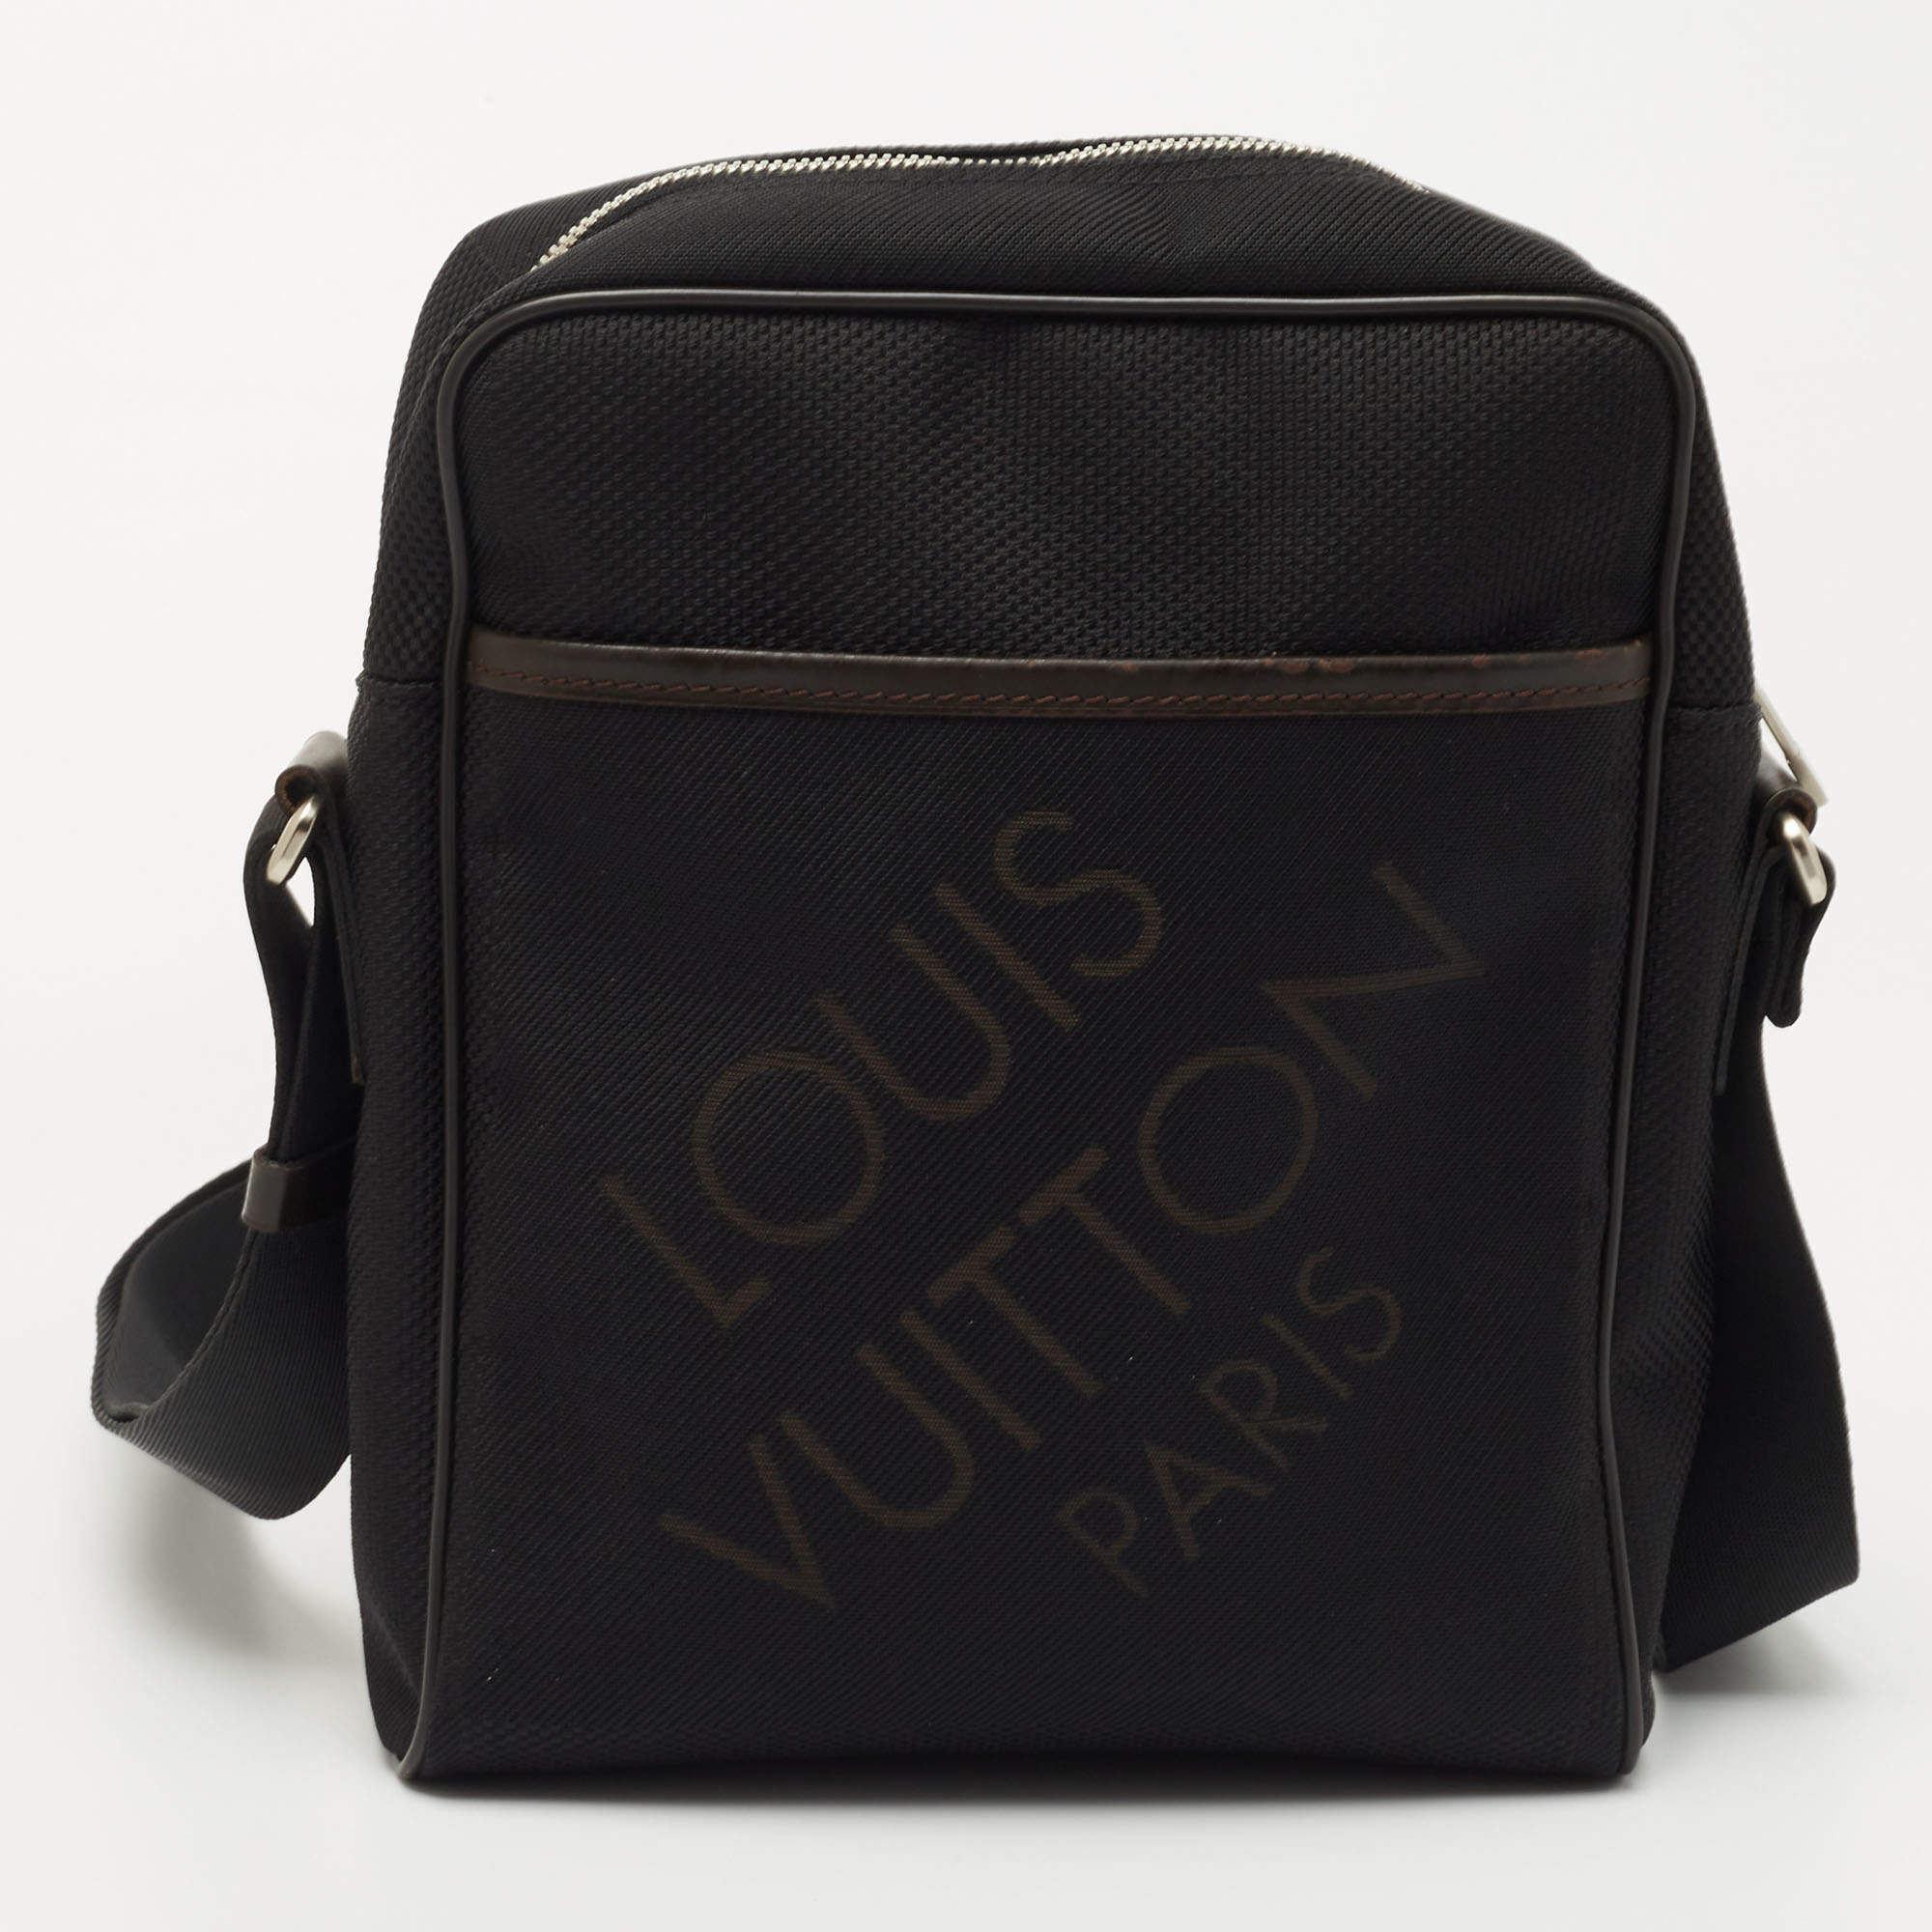 Citadin cloth bag Louis Vuitton Brown in Cloth - 35645424